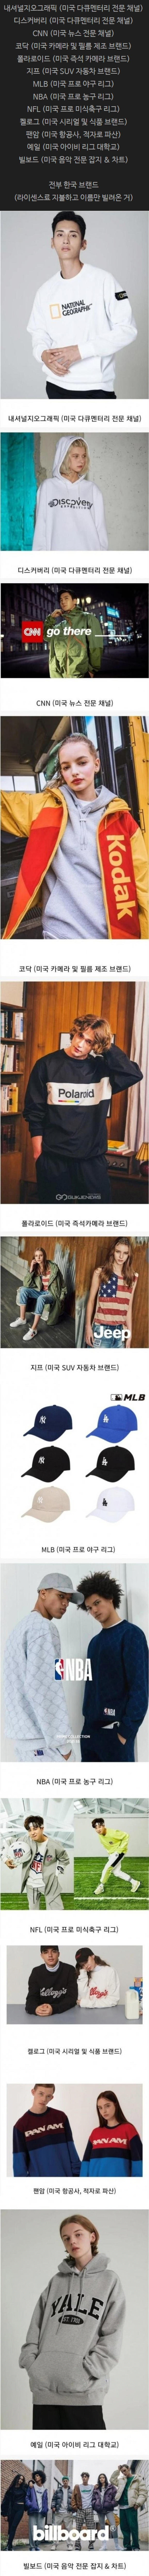 한국이 접수한 해외 브랜드.png.jpg